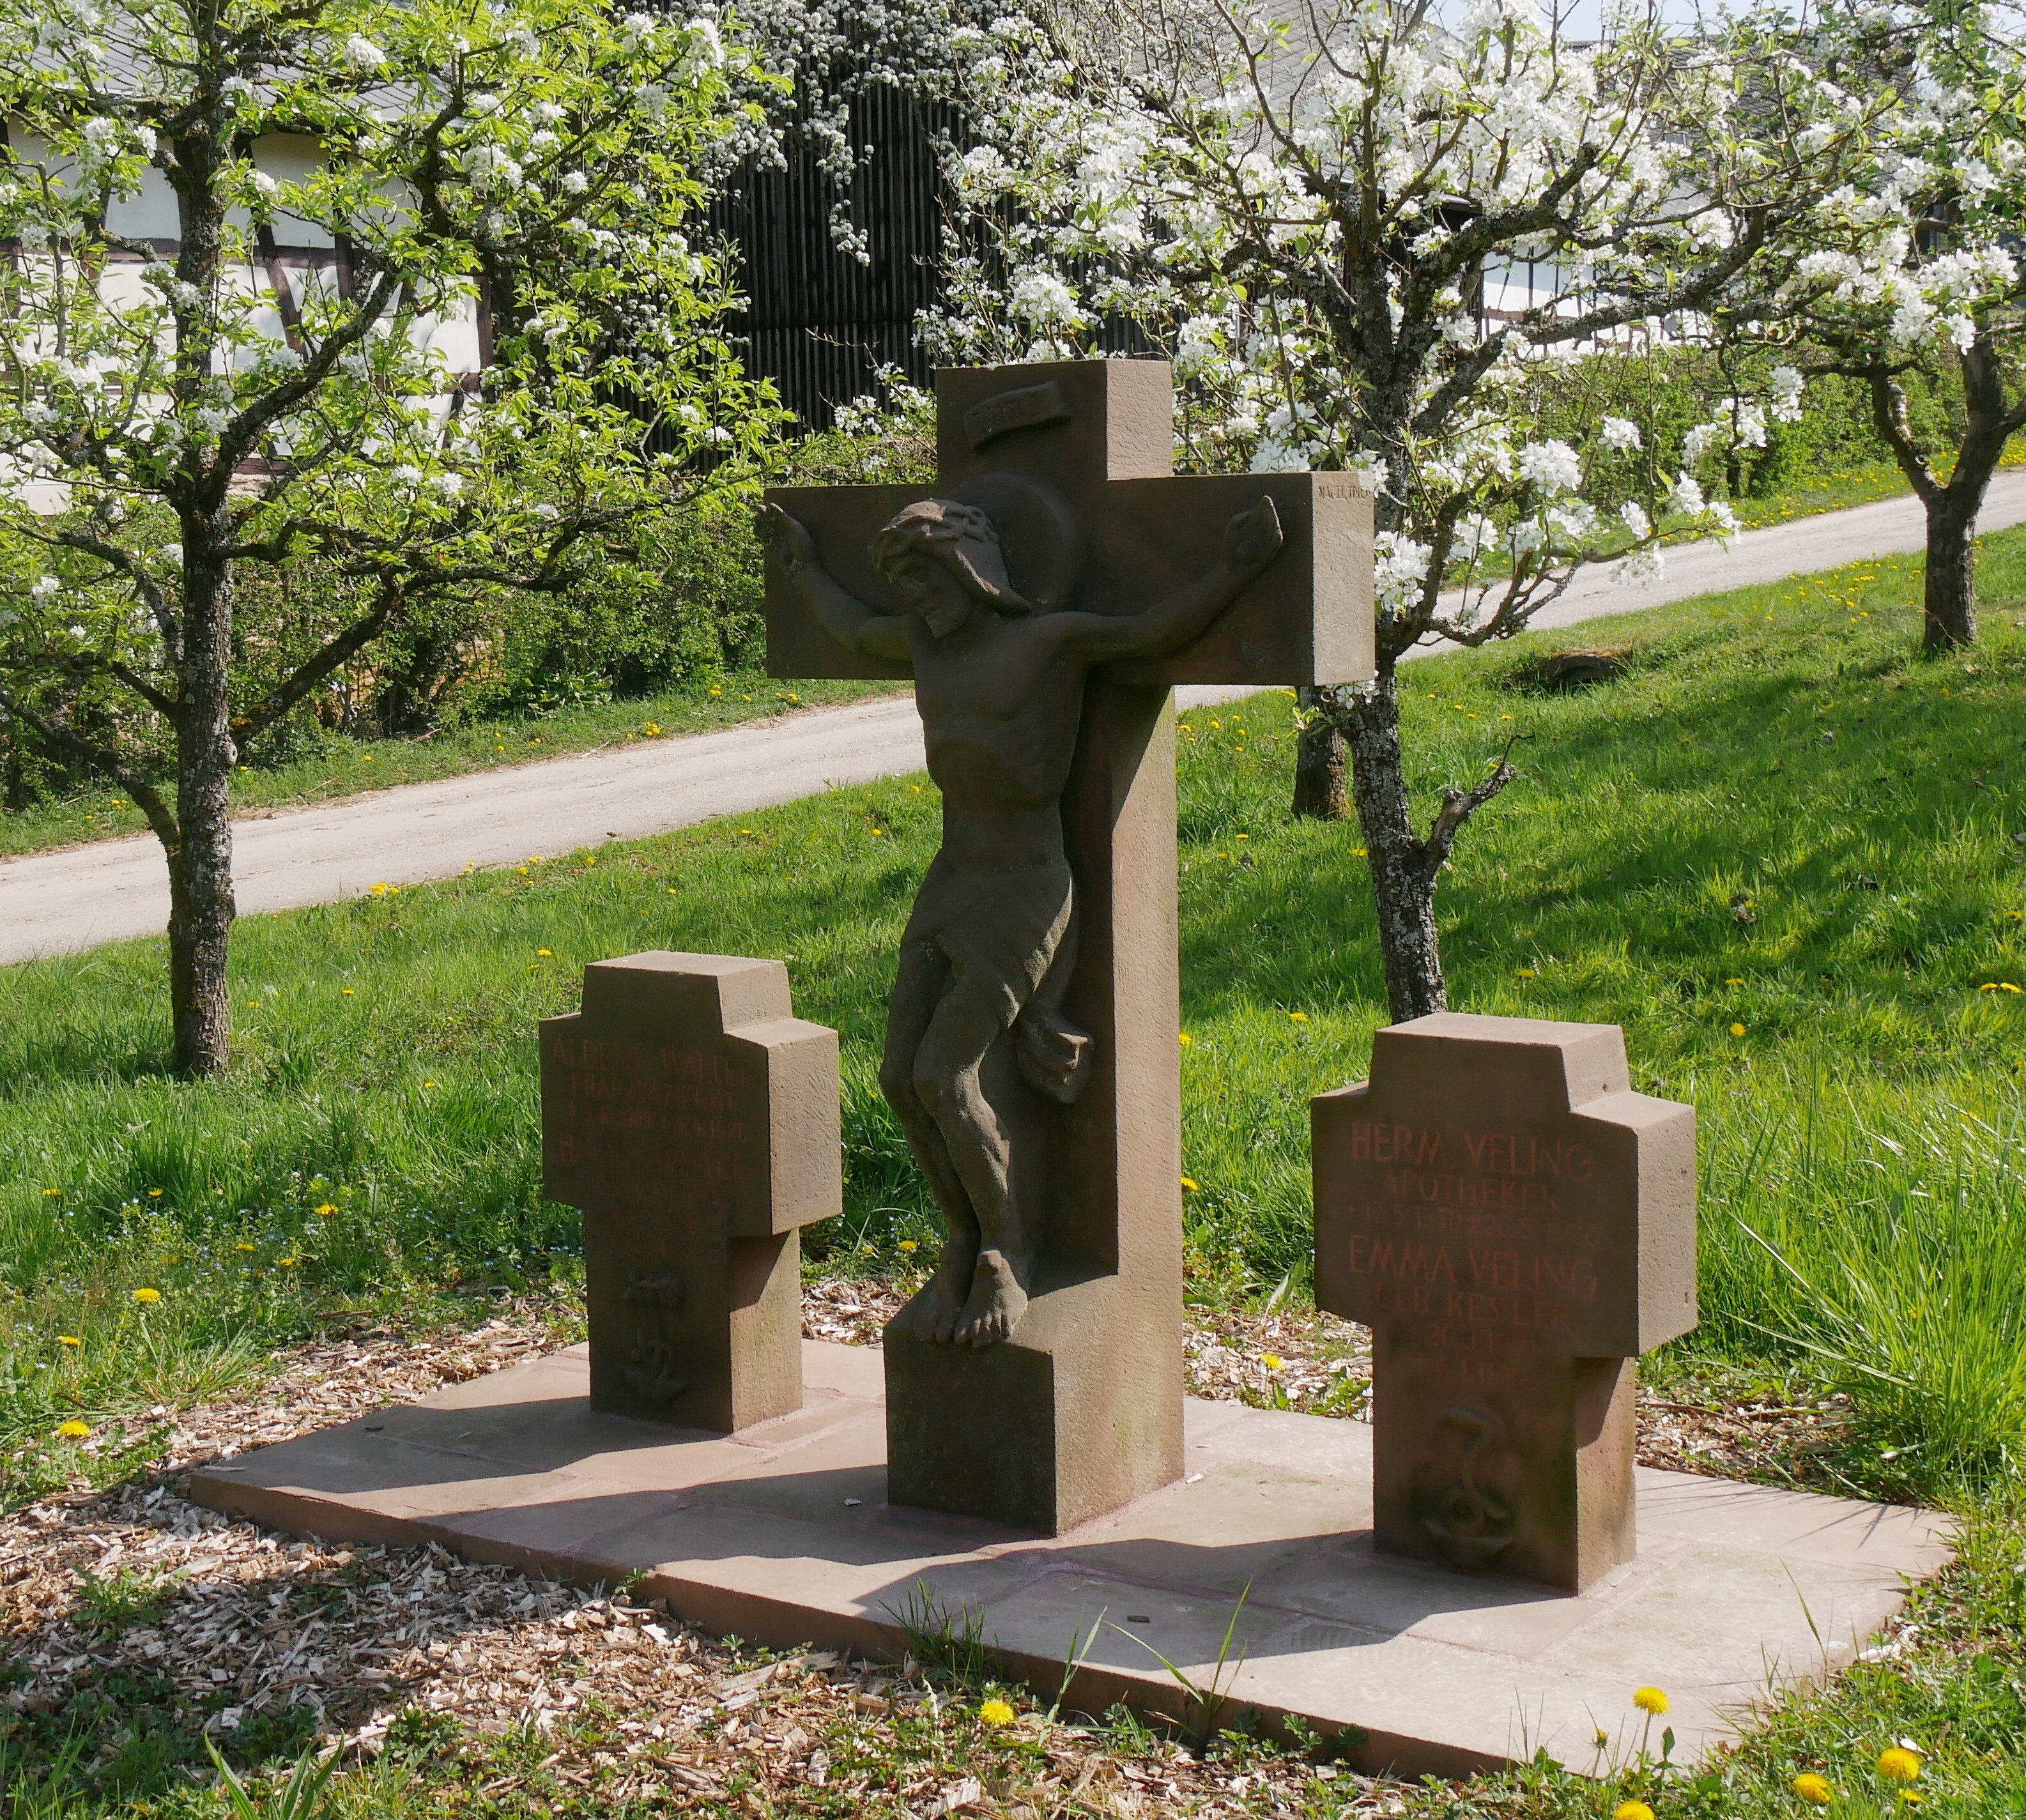 Grabenkmal mit 3 Kreuzen (Volkskunde- und Freilichtmuseum Roscheider Hof CC0)